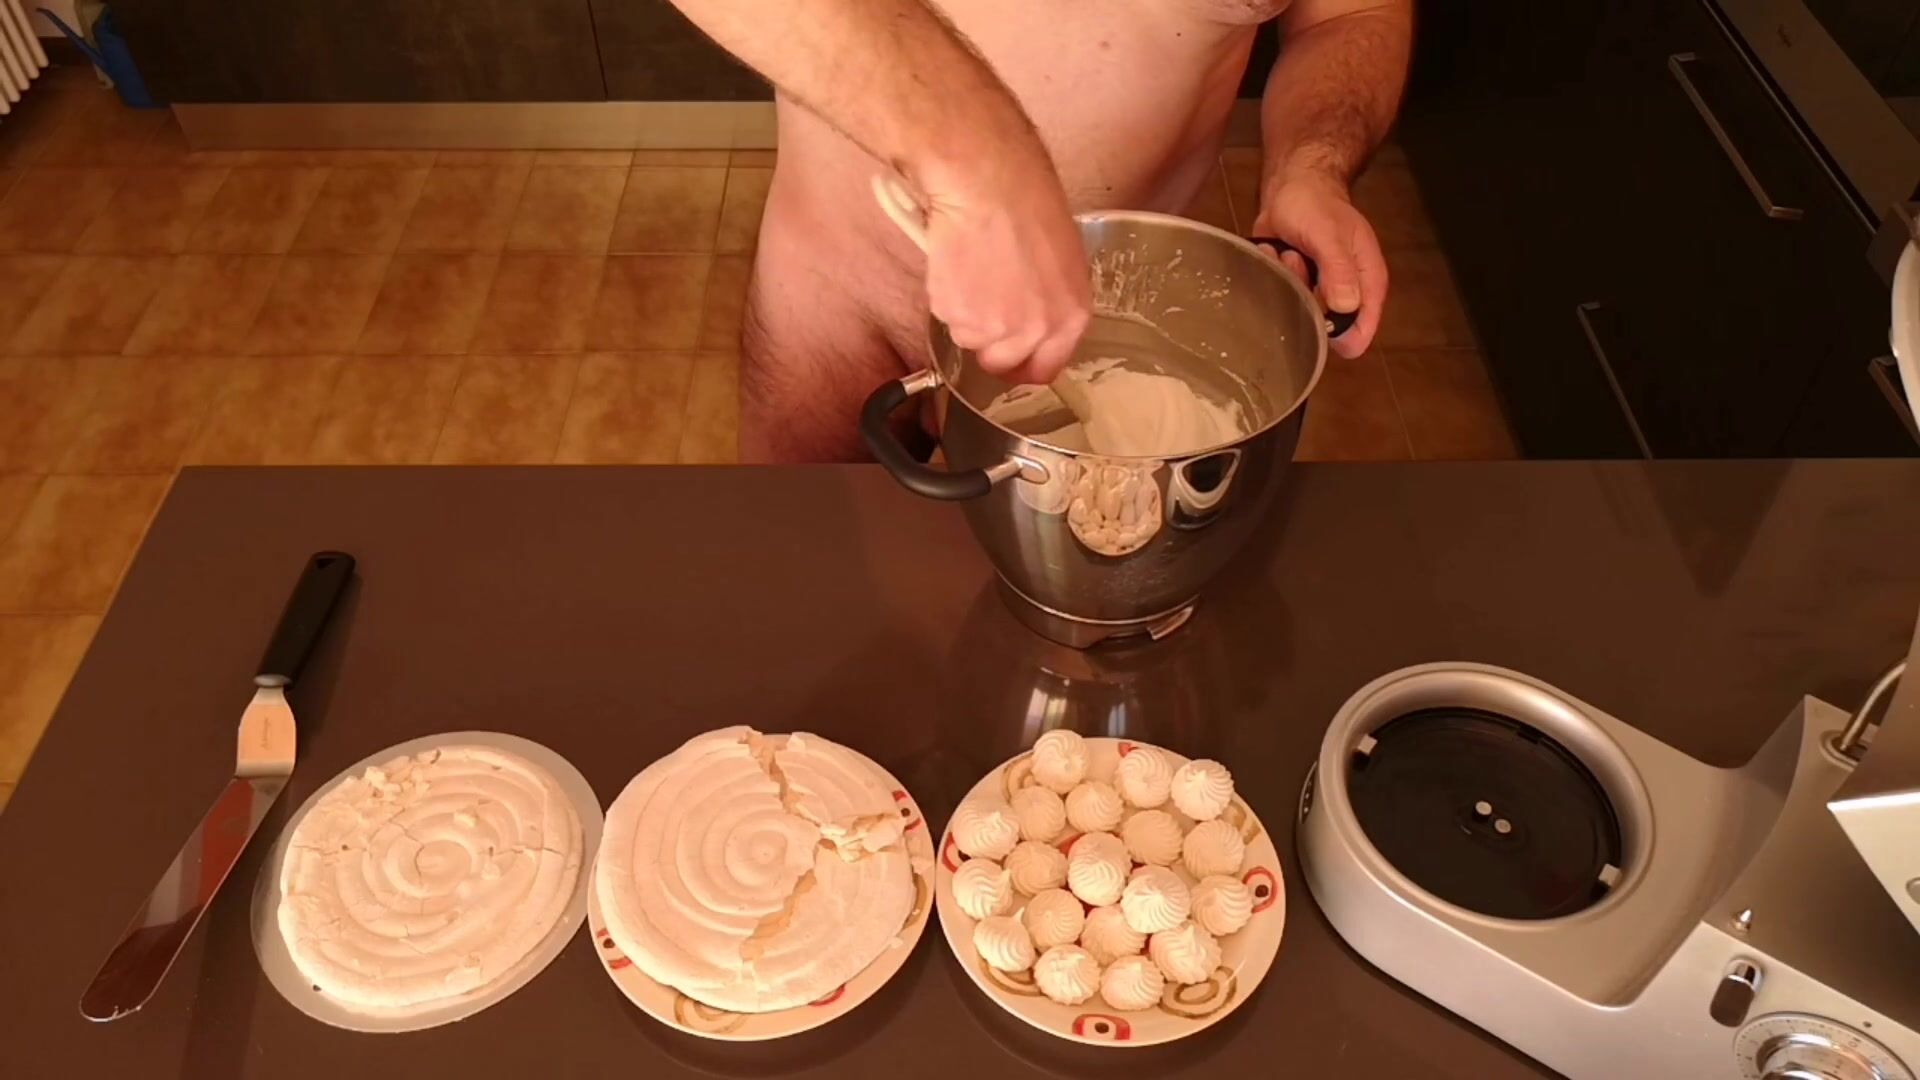 Cicci77 dopo aver raccolto 50 grammi di sborra, prepara una torta meringata allo sperma! guarda online Immagine